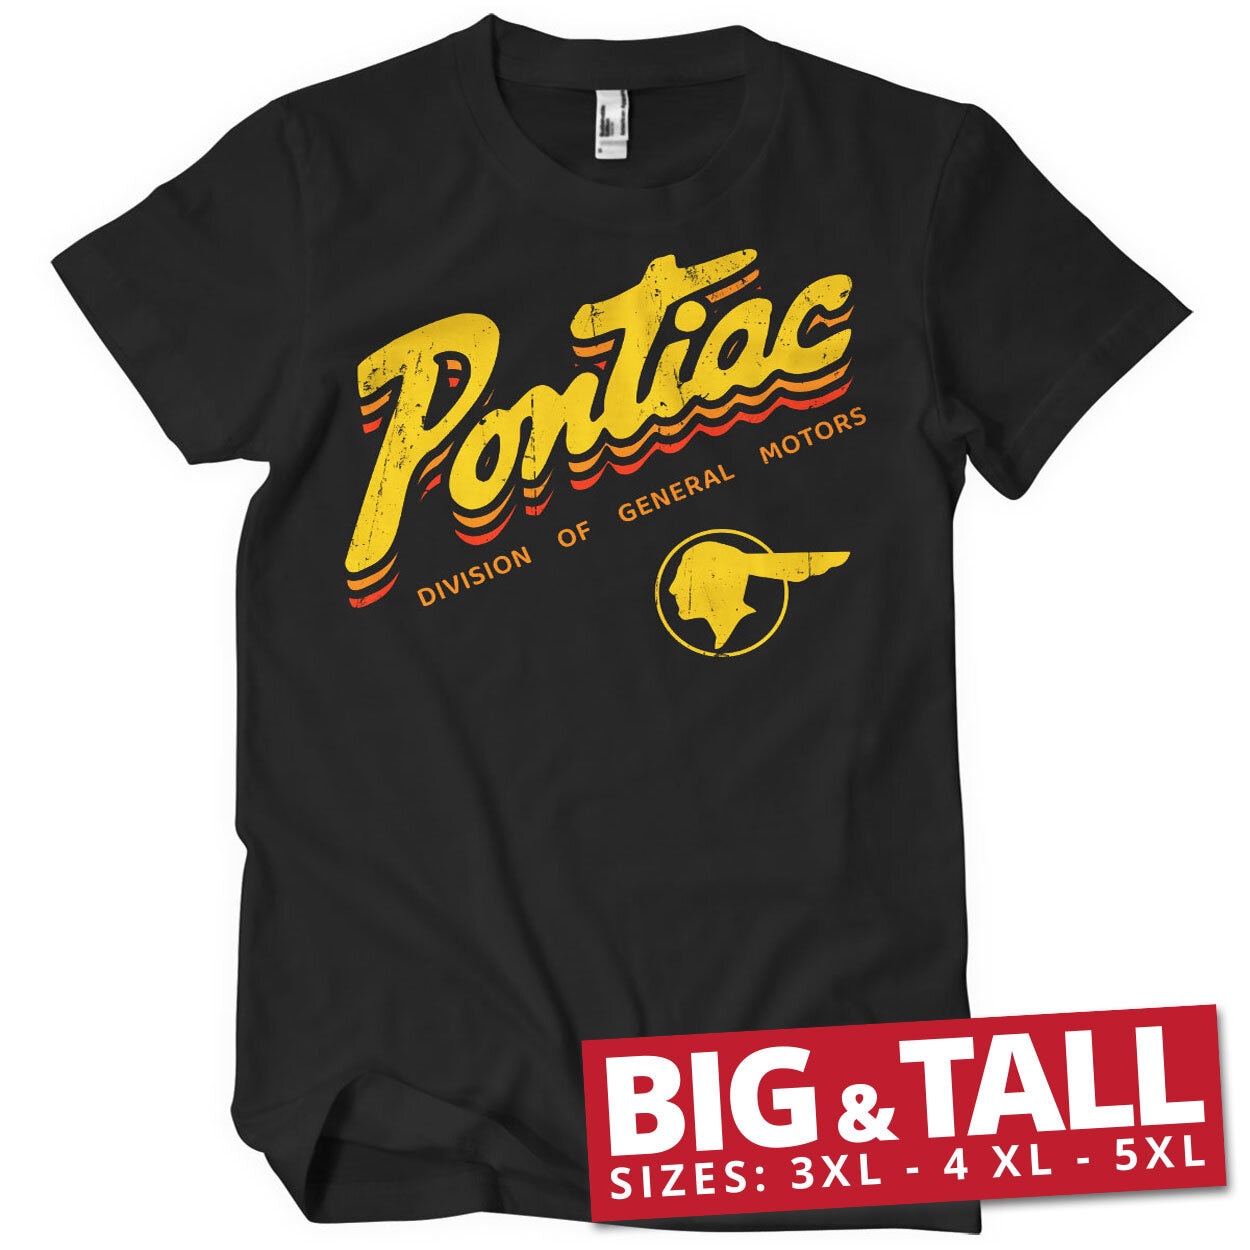 Pontiac Division Of General Motors Big & Tall T-Shirt